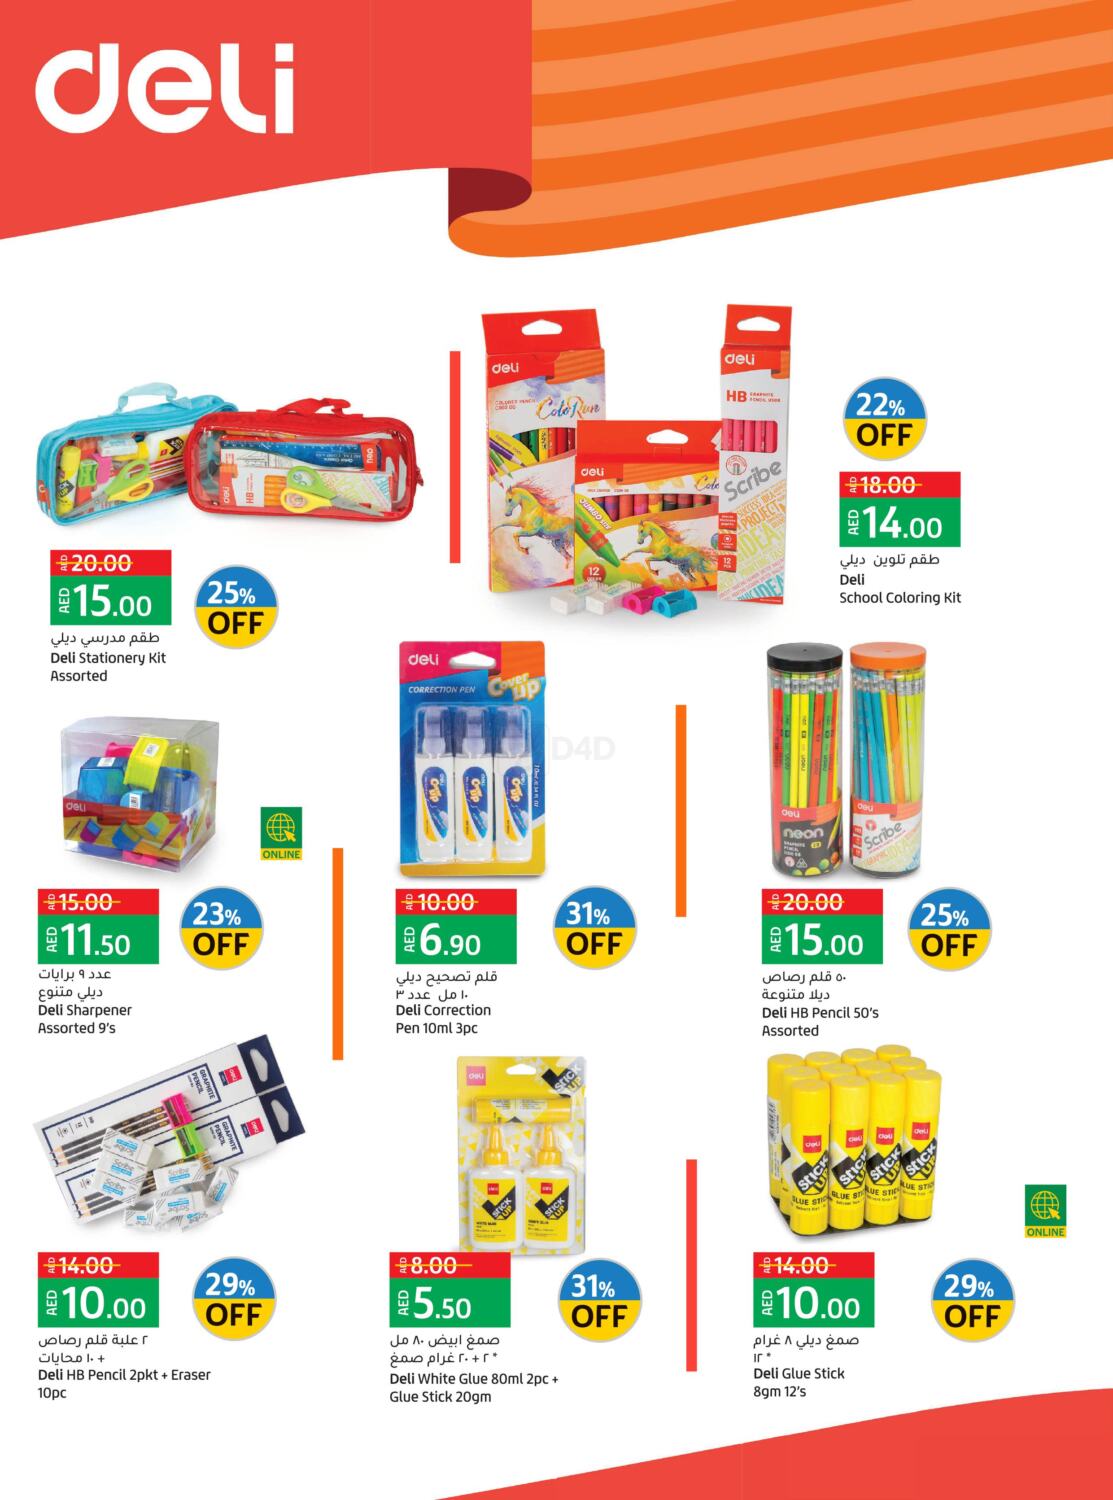 Lulu Hypermarket Weekly Price Busters in UAE - Dubai. Till 25th August